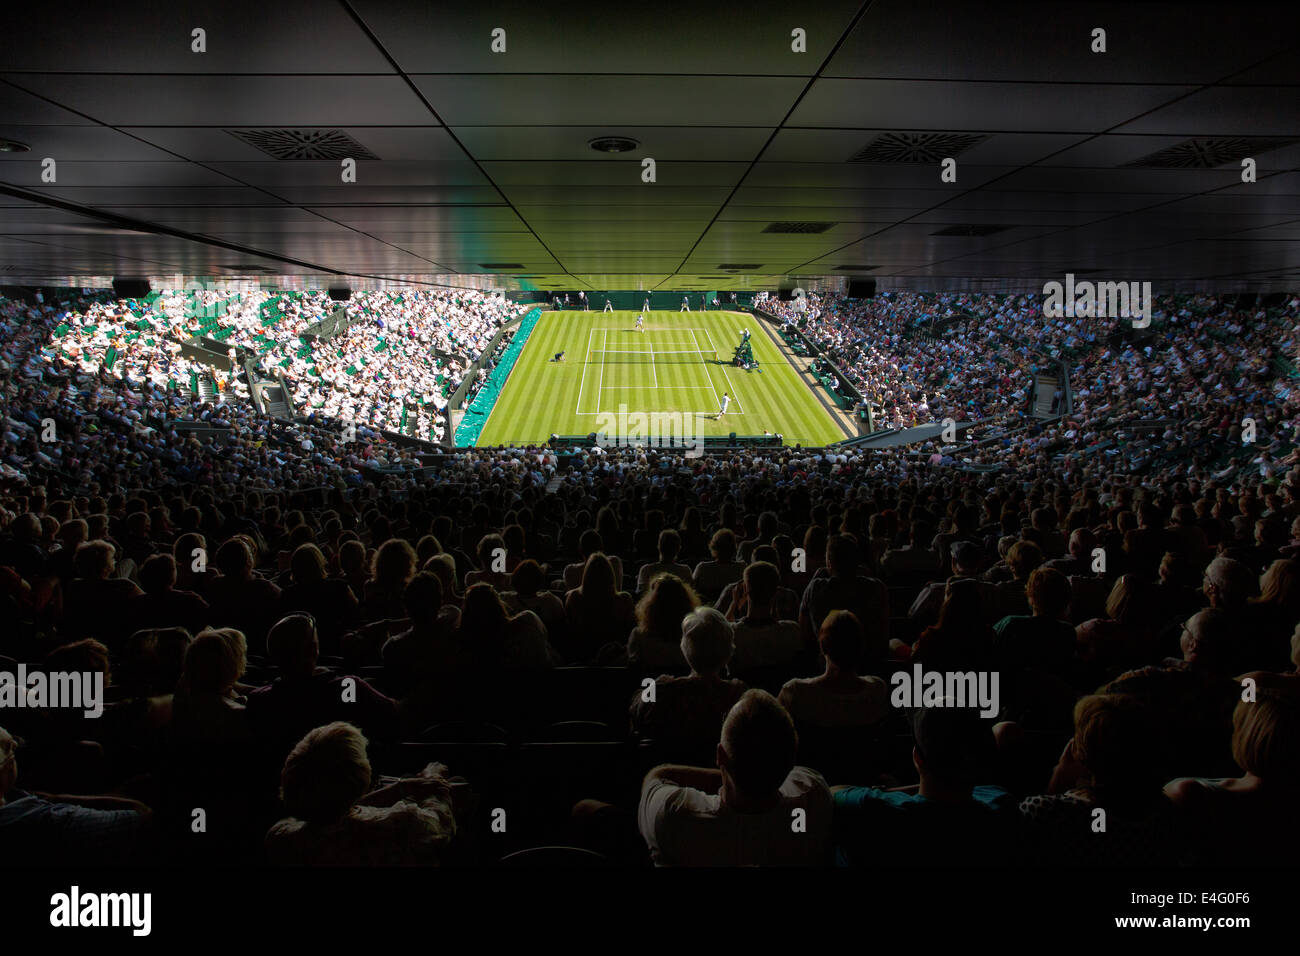 El centro de la Cancha, Campeonatos de Tenis de Wimbledon 2014, al suroeste de Londres, Inglaterra, Reino Unido. Foto de stock